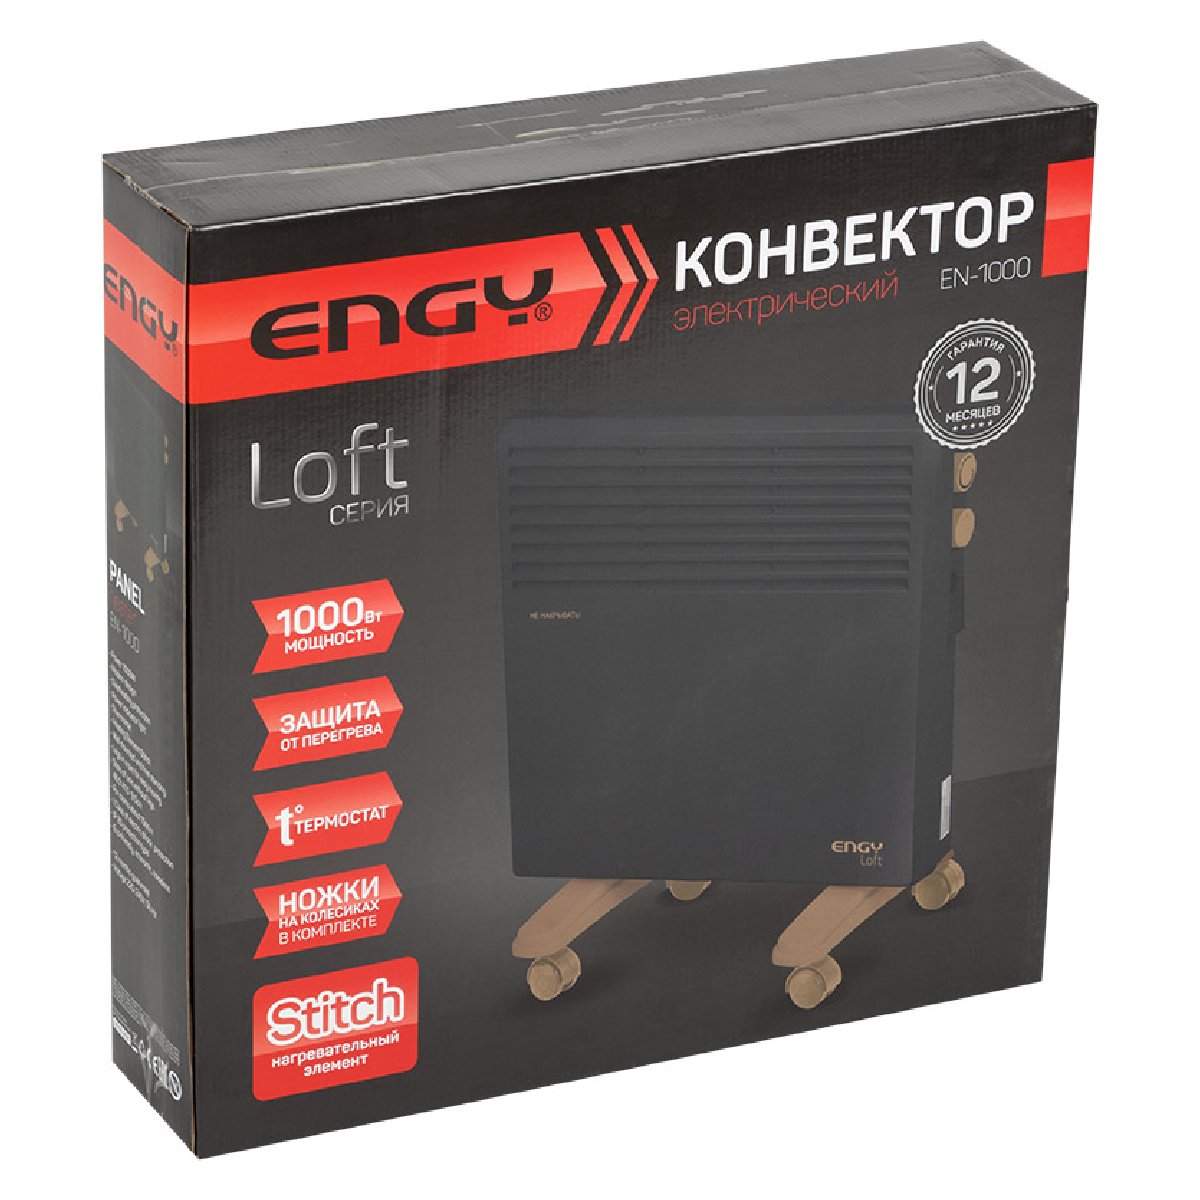 Конвектор электрический ENGY EN-1000 Loft (102930)